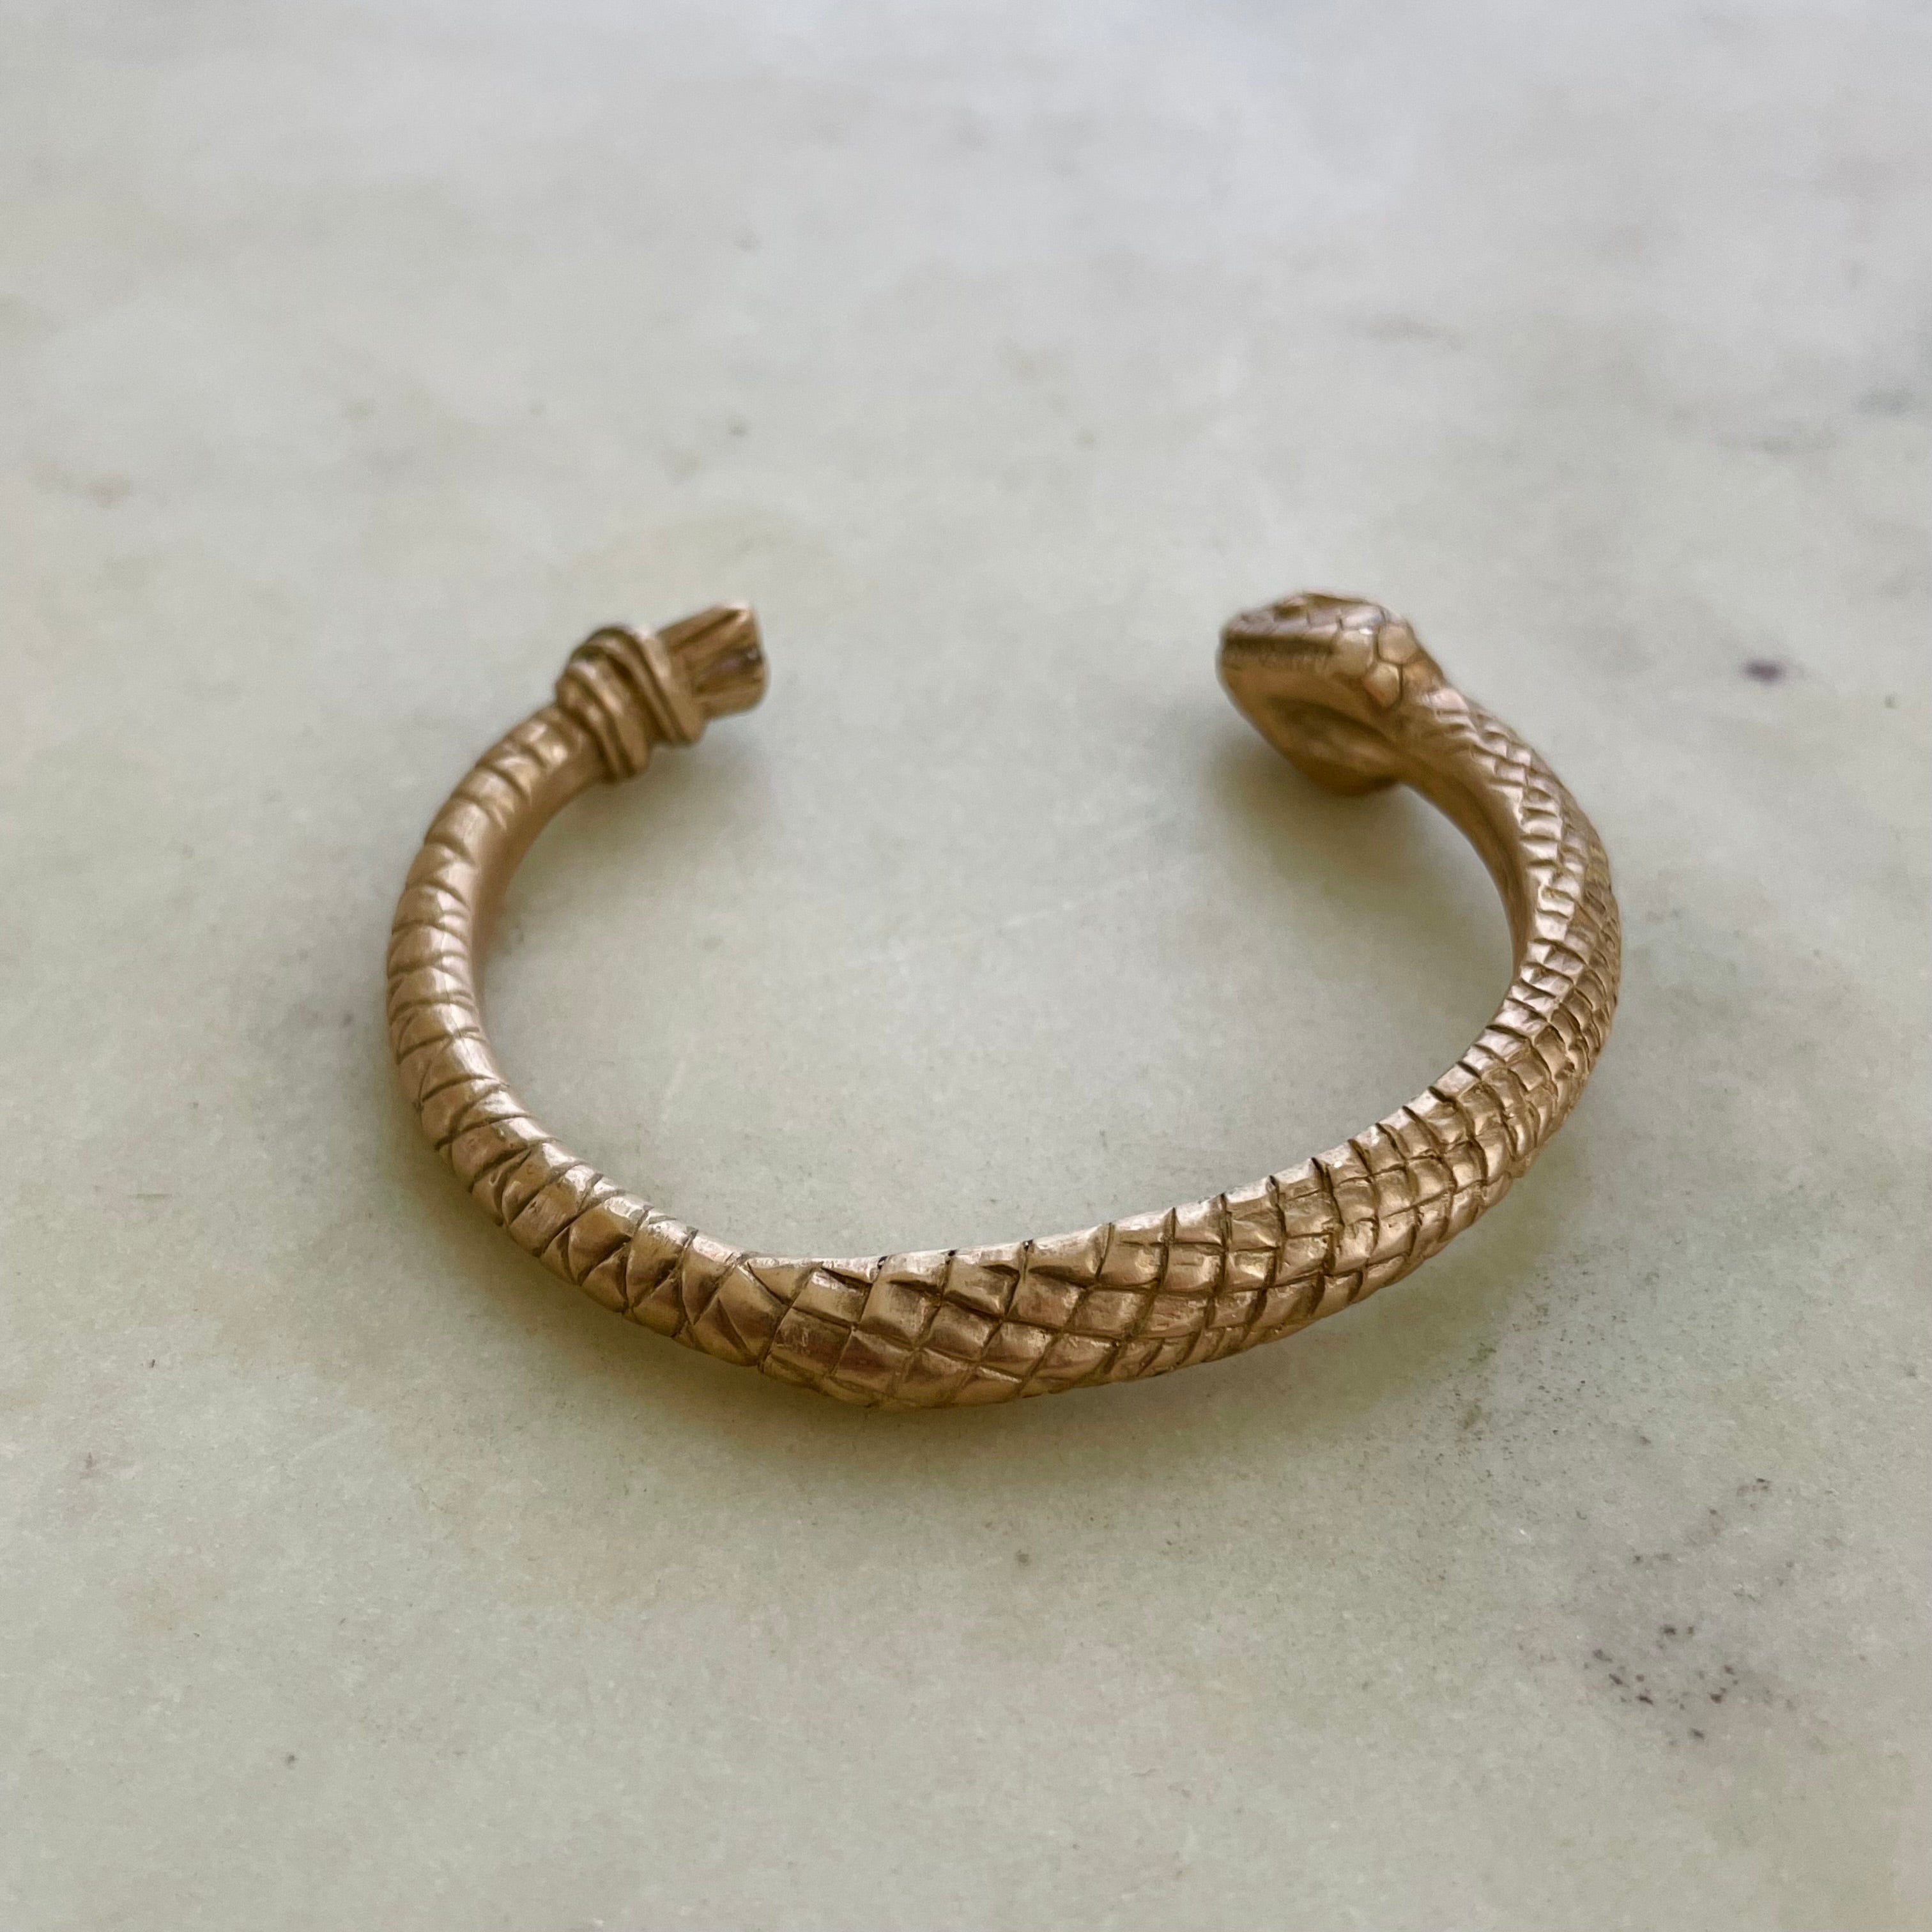 Vintage Copper Snake Head Crafted Tribal Handcrafted Bracelet/Bangles | eBay